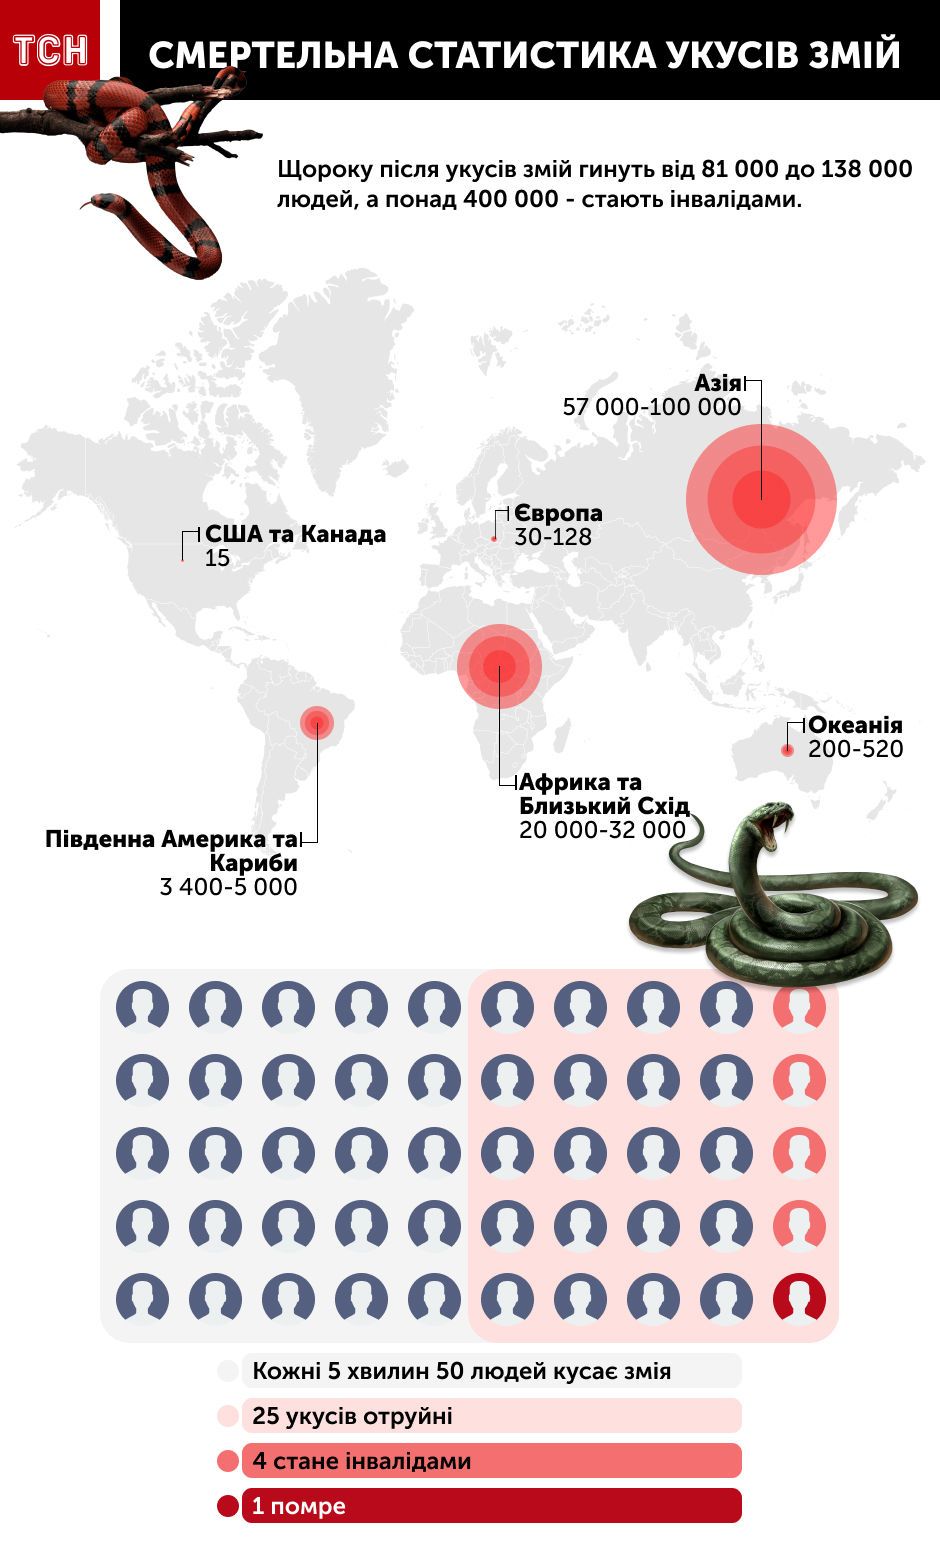 смертельна статистика укусів змій, інфографіка